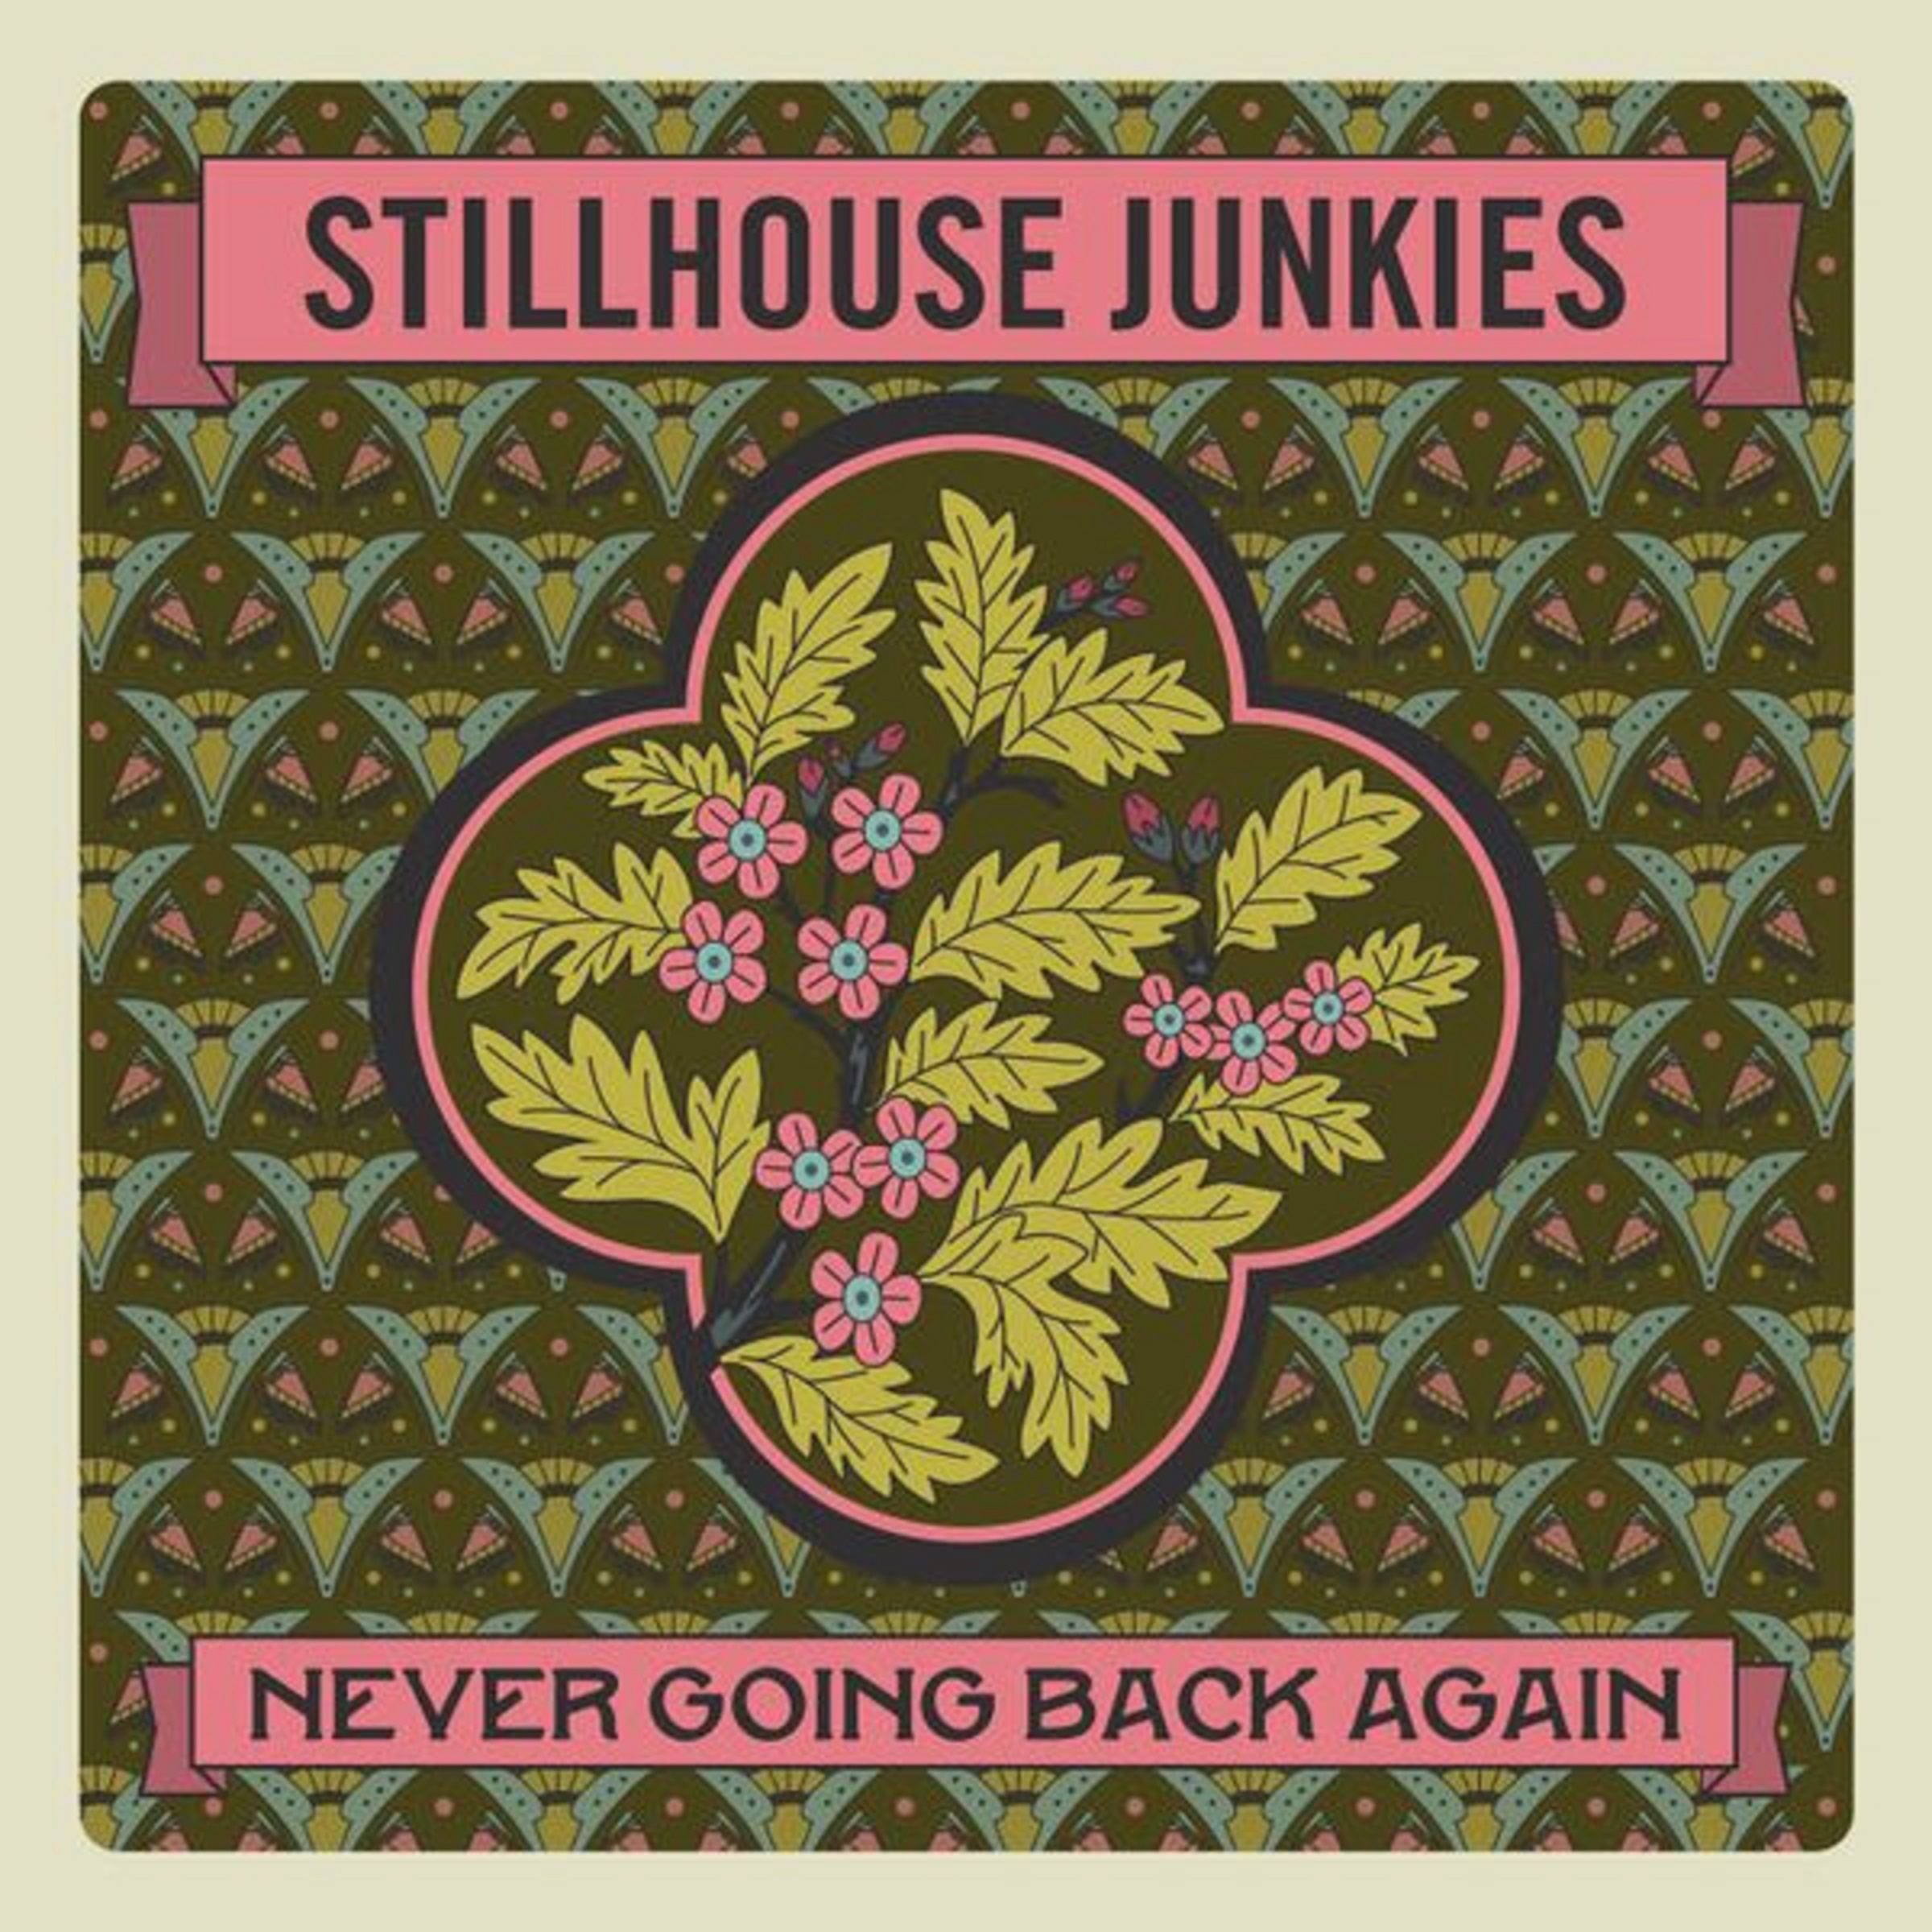 Award-Winning Stillhouse Junkies Release Latest Single, "Never Going Back Again"